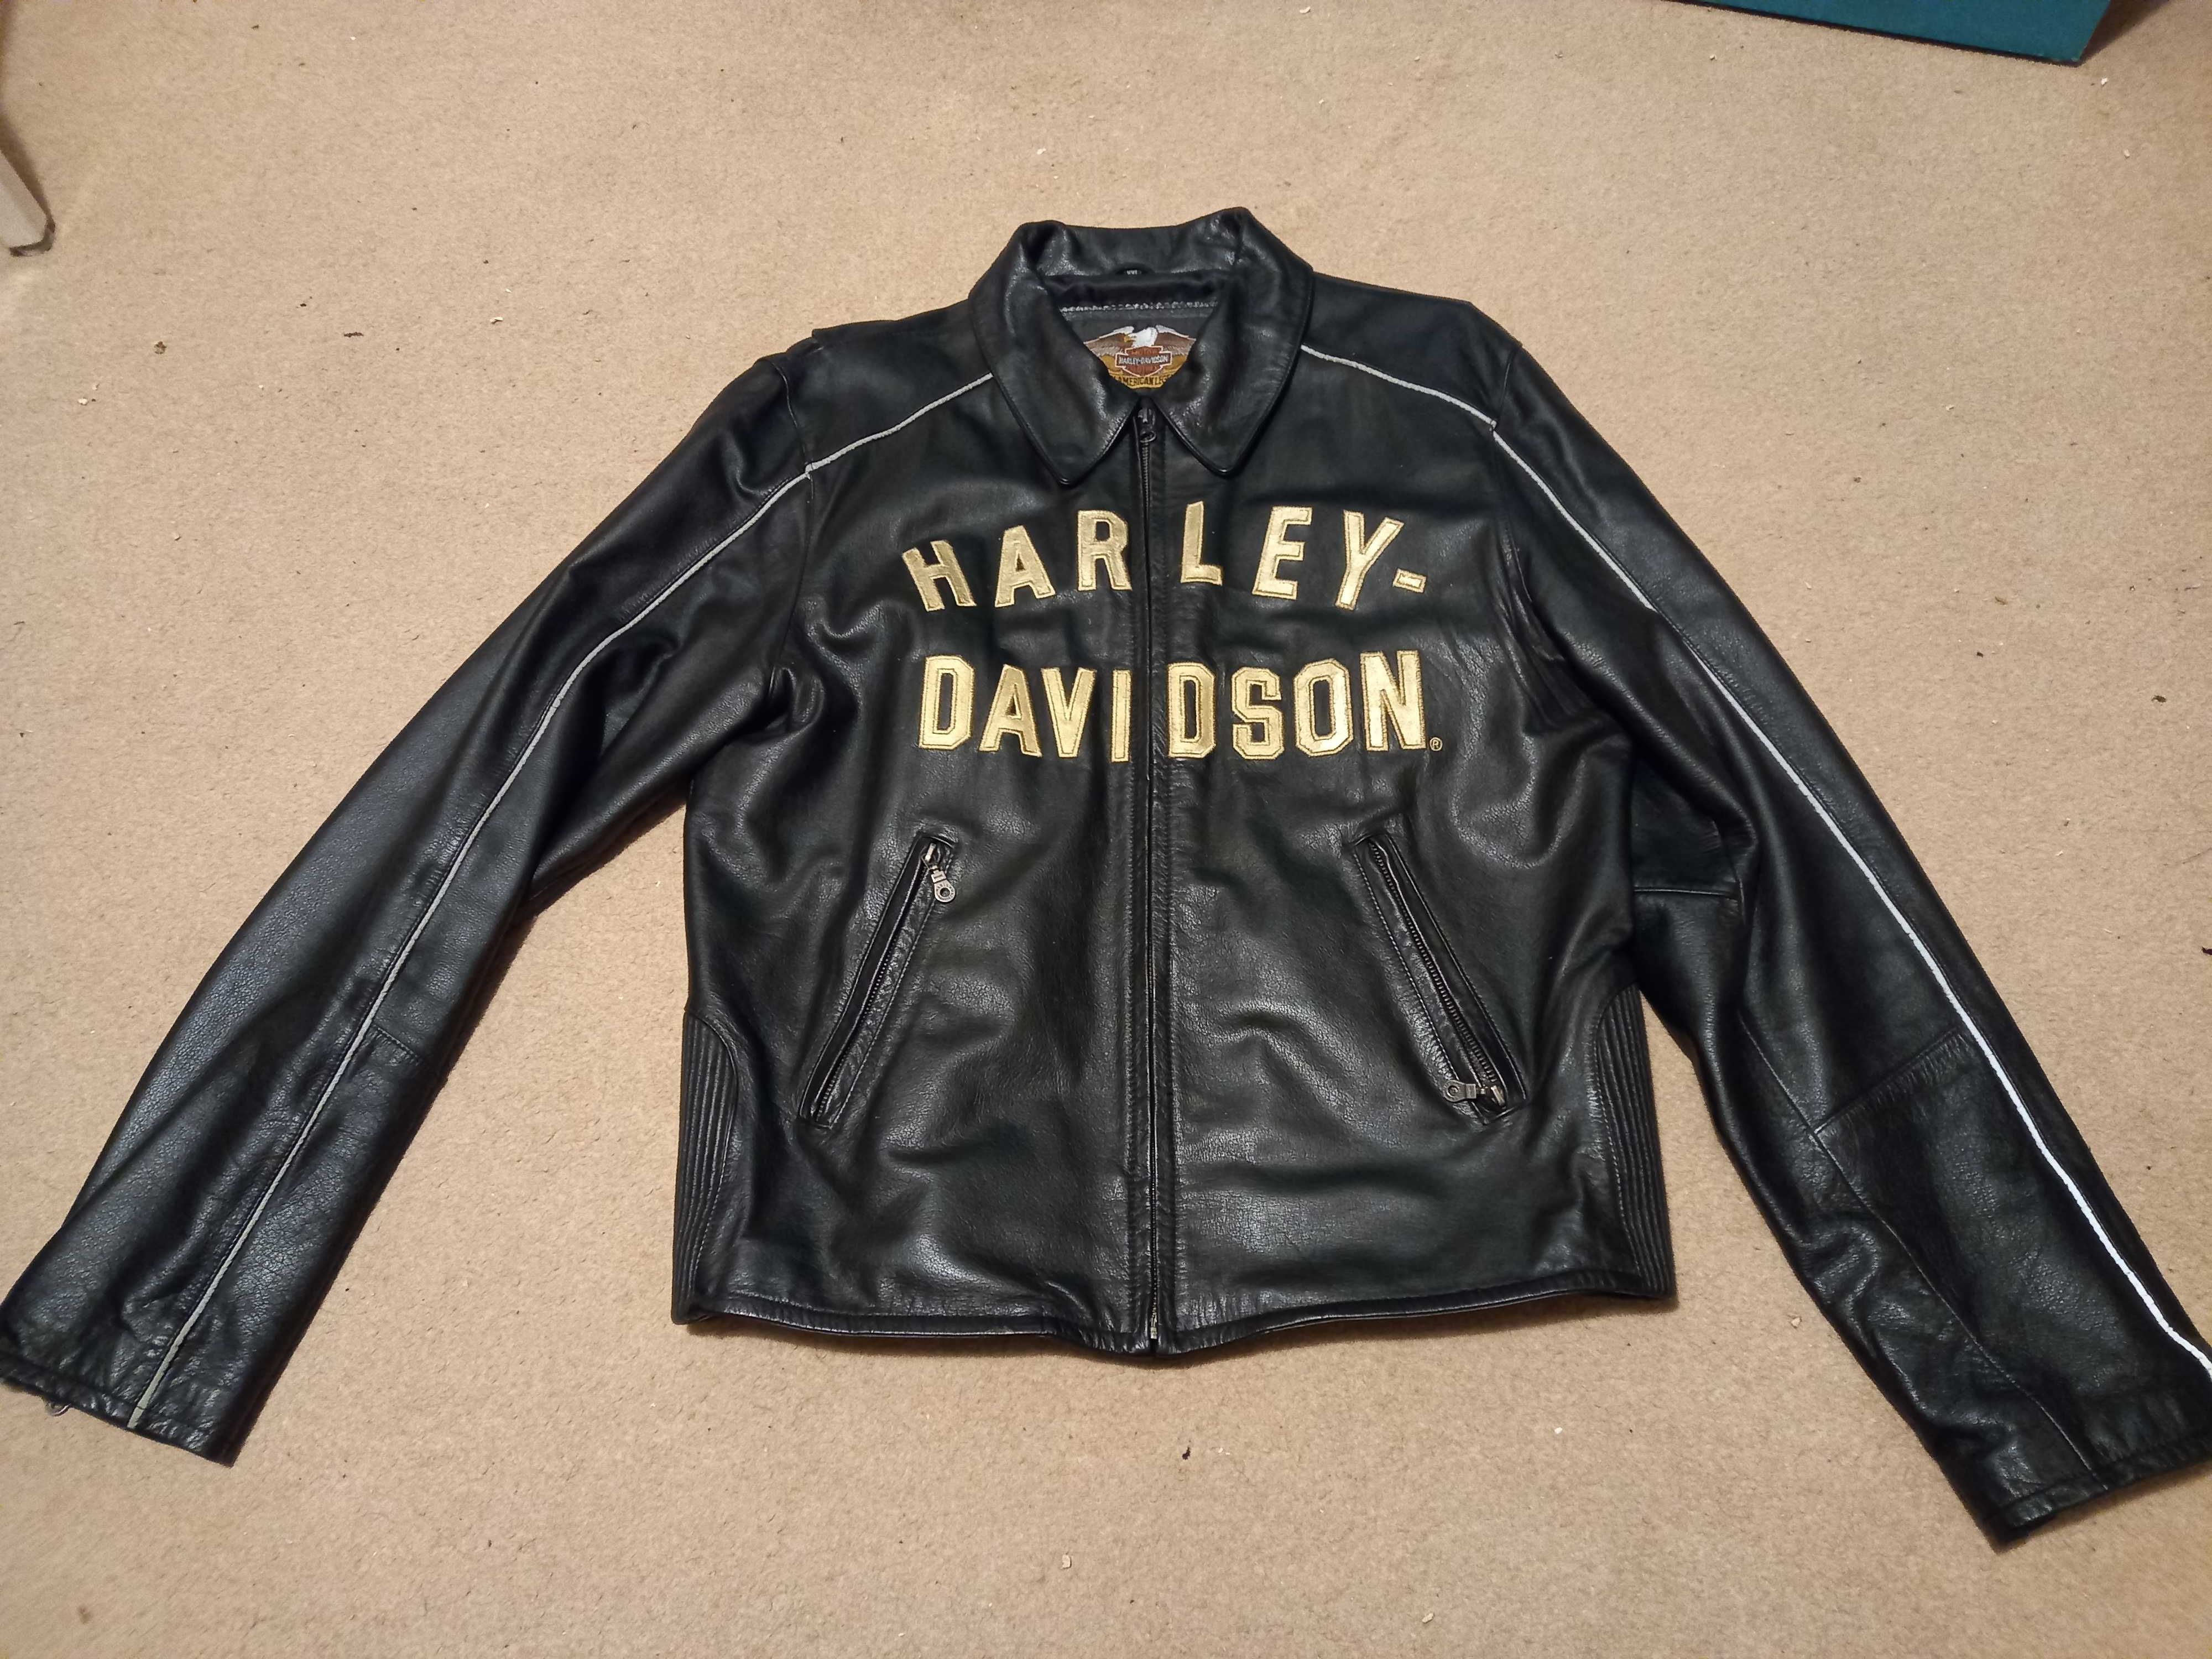 Harley Davidson casaco homem centenário tamanho XXL